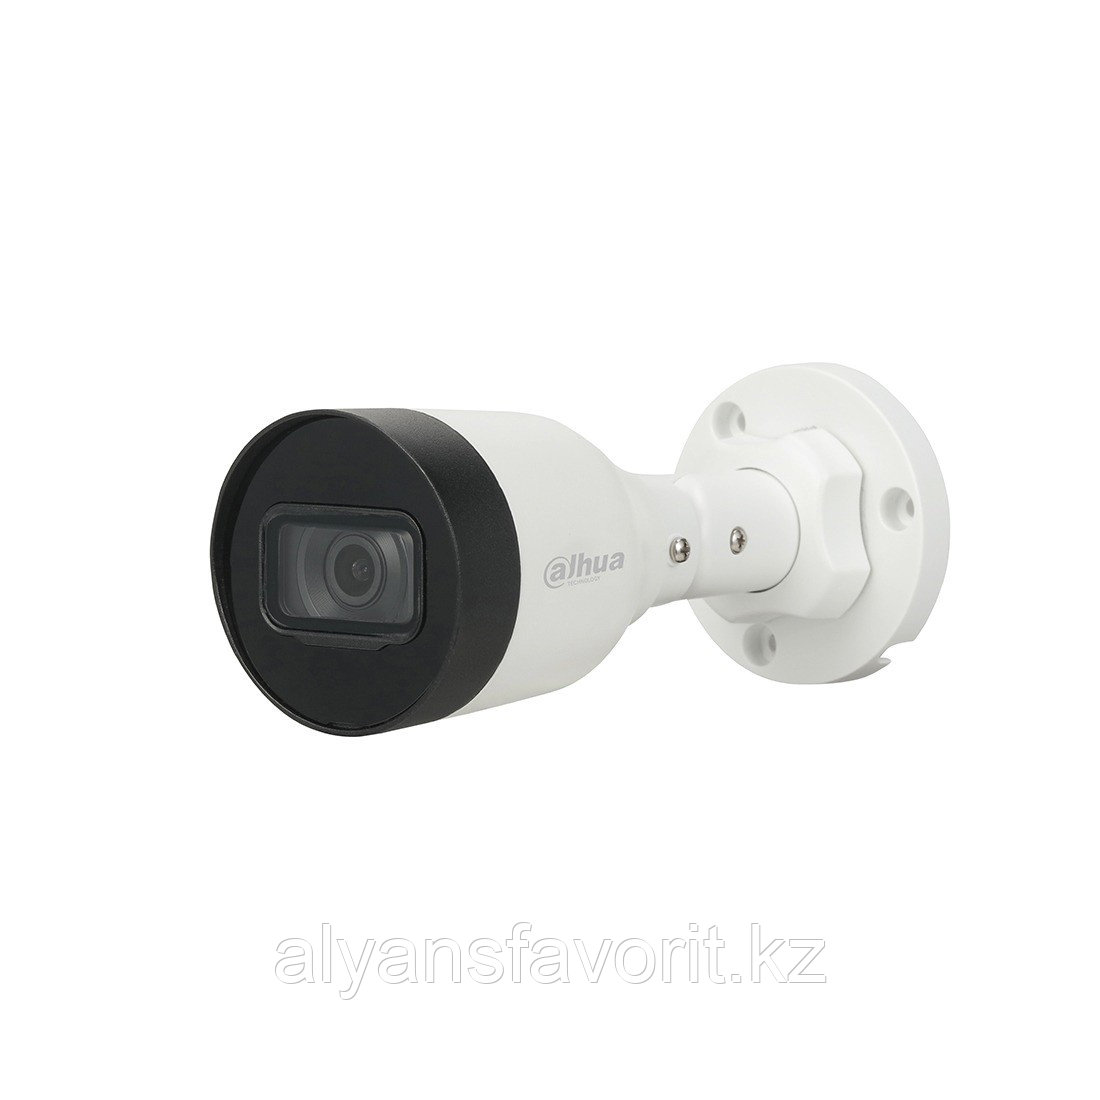 Камера видеонаблюдения  Dahua DH-IPC-HFW1230S1P-0280B